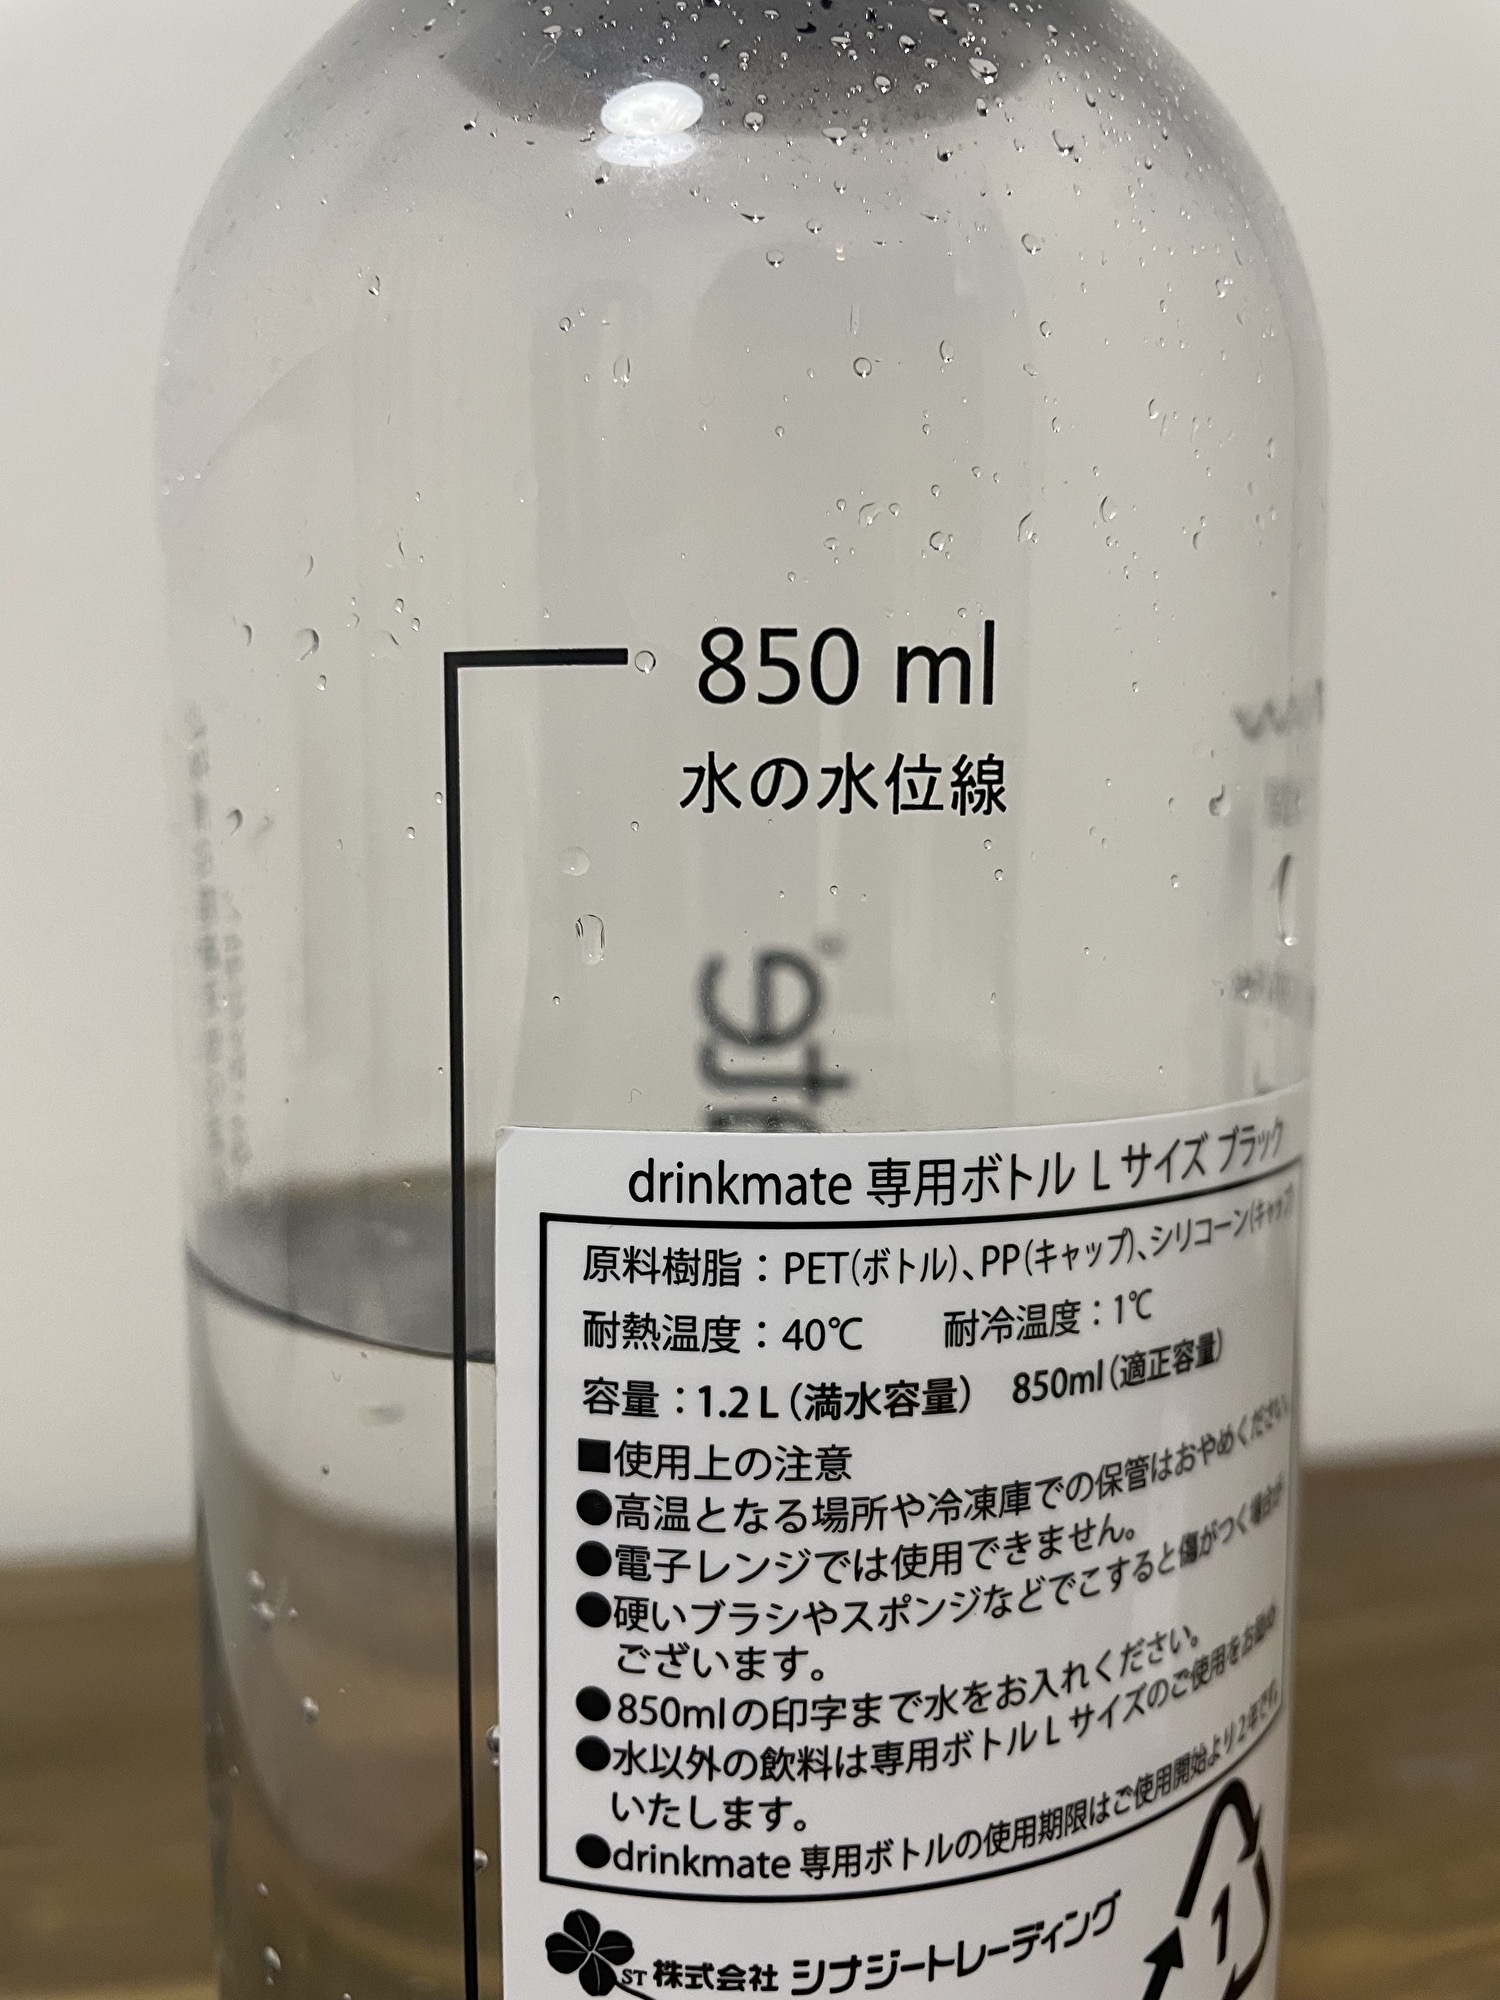 drinkmateボトルの水位線を移した写真